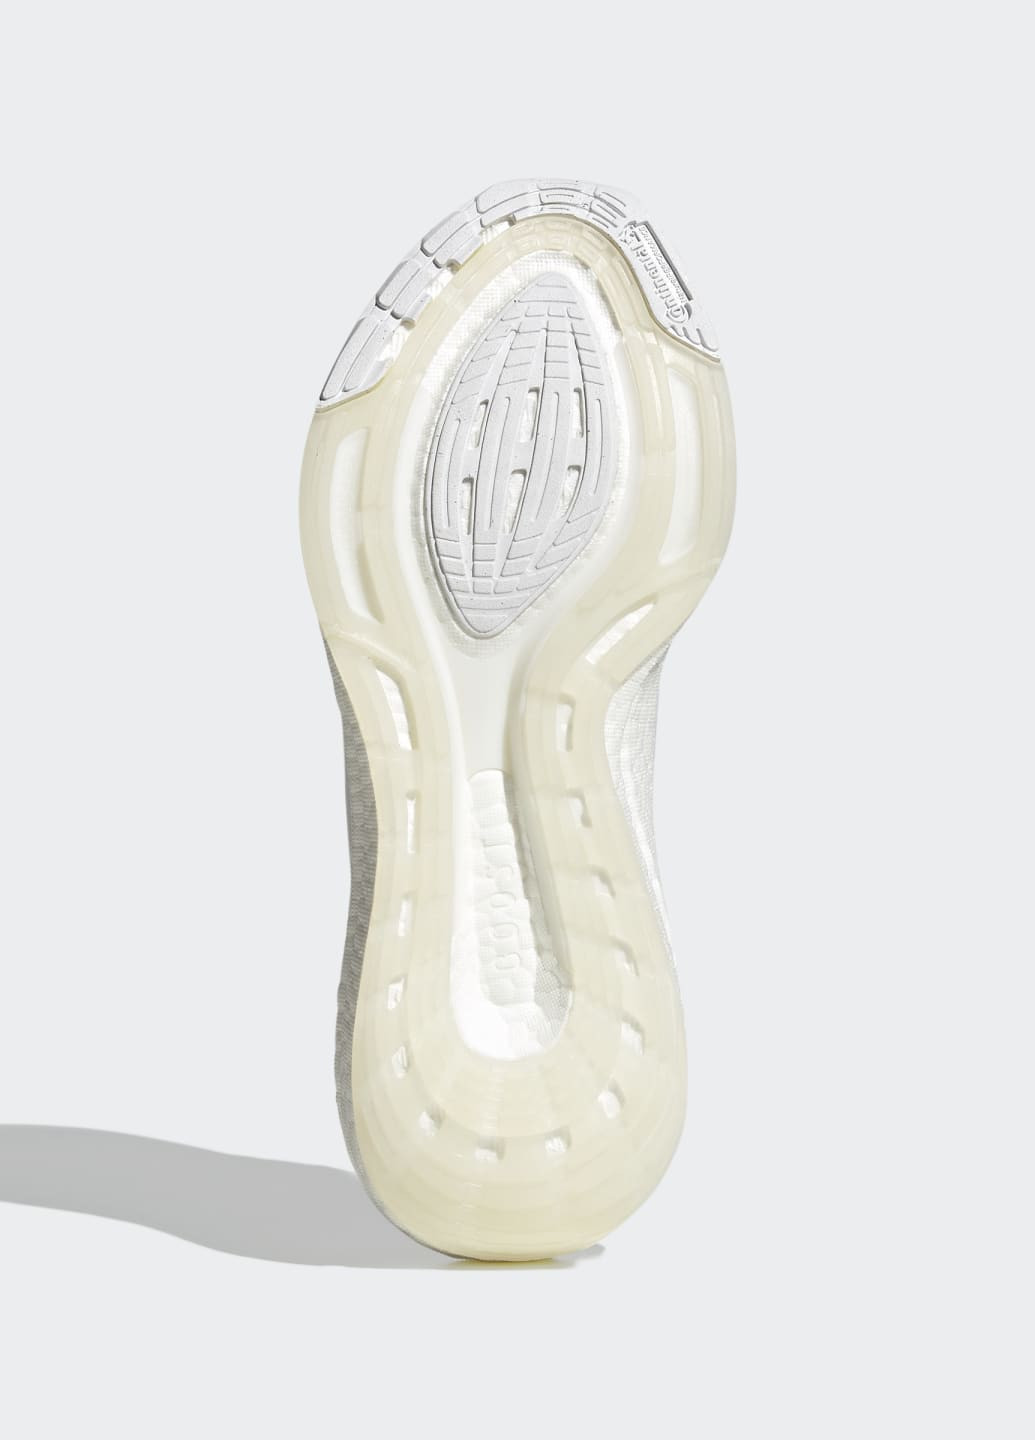 Белые всесезонные кроссовки для бега ultraboost 22 adidas